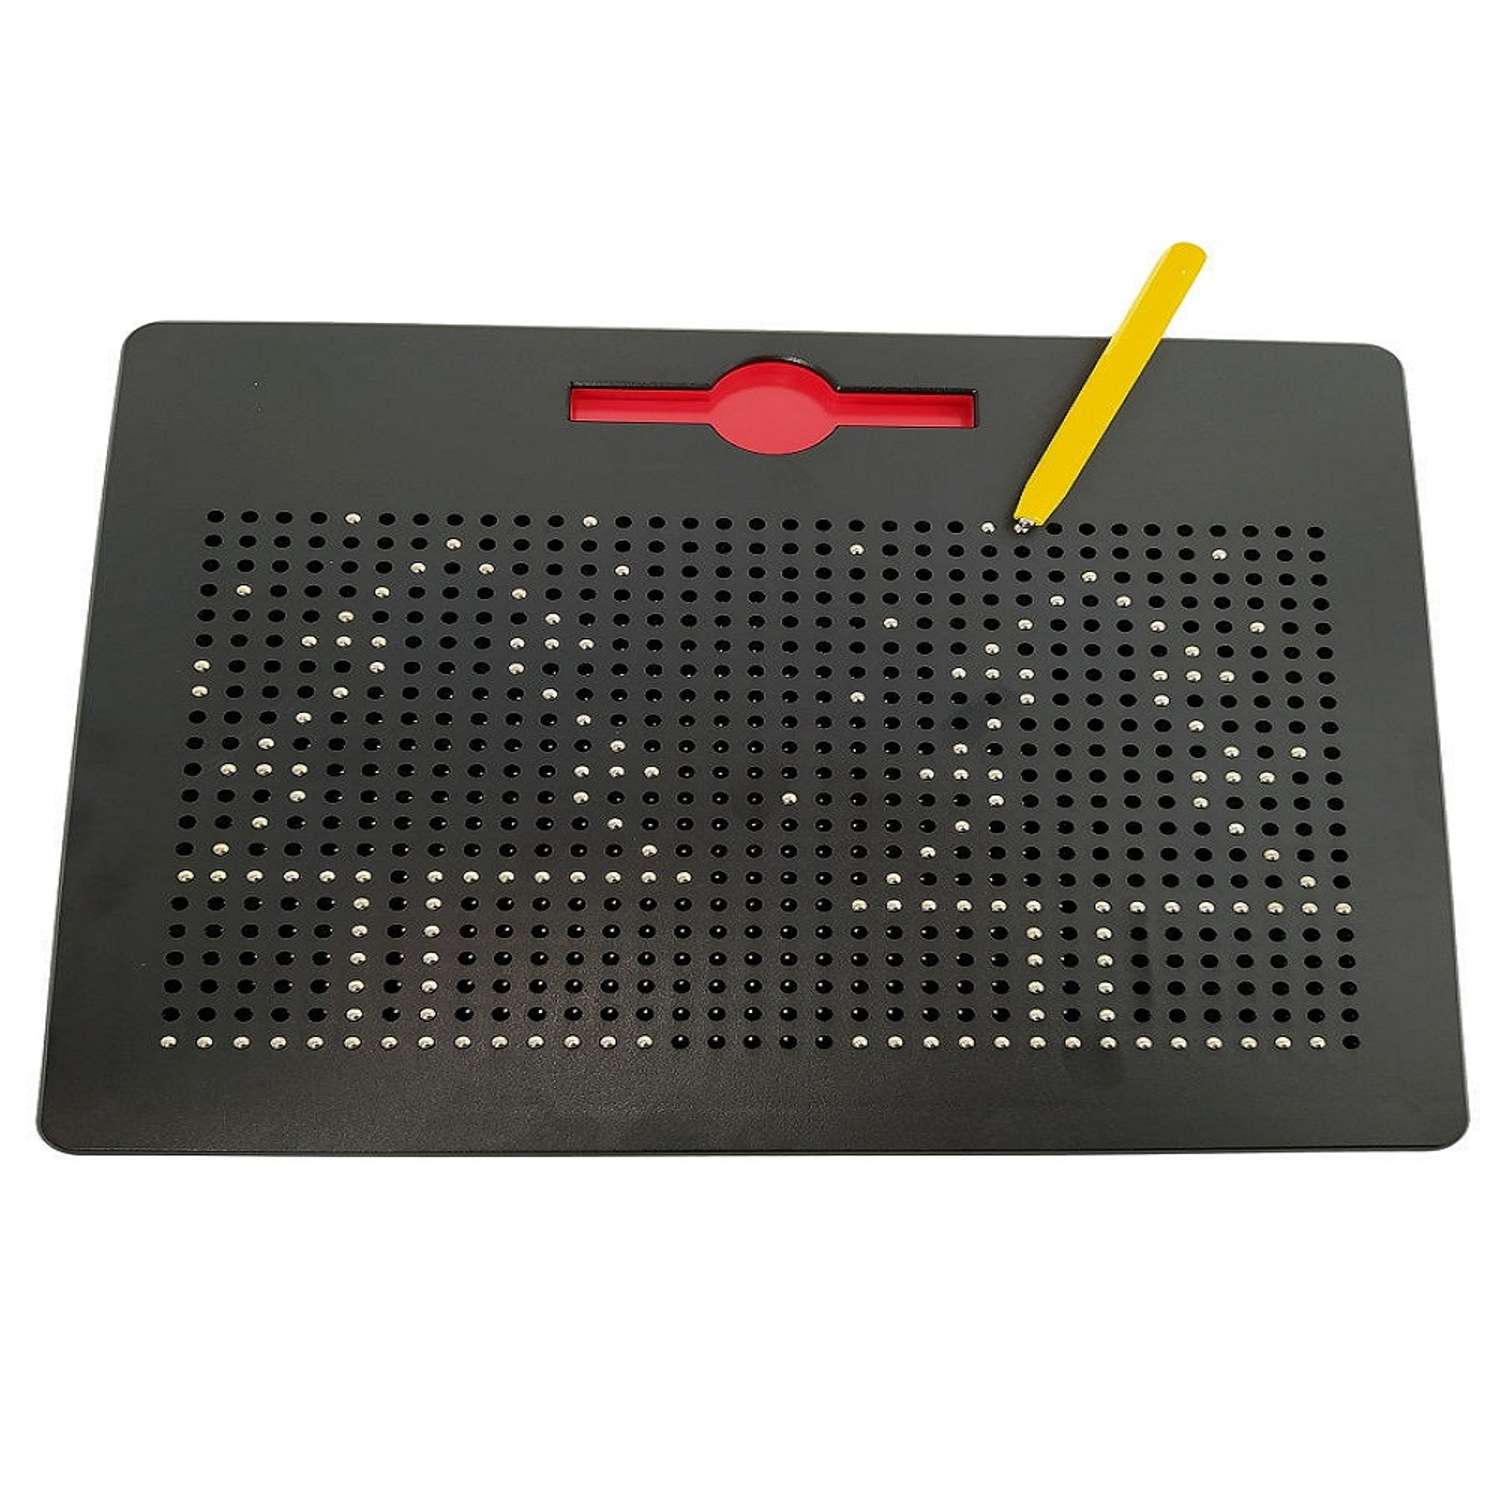 Игровой набор головоломка GANDBO планшет для рисования магнитами 380 деталей - фото 4